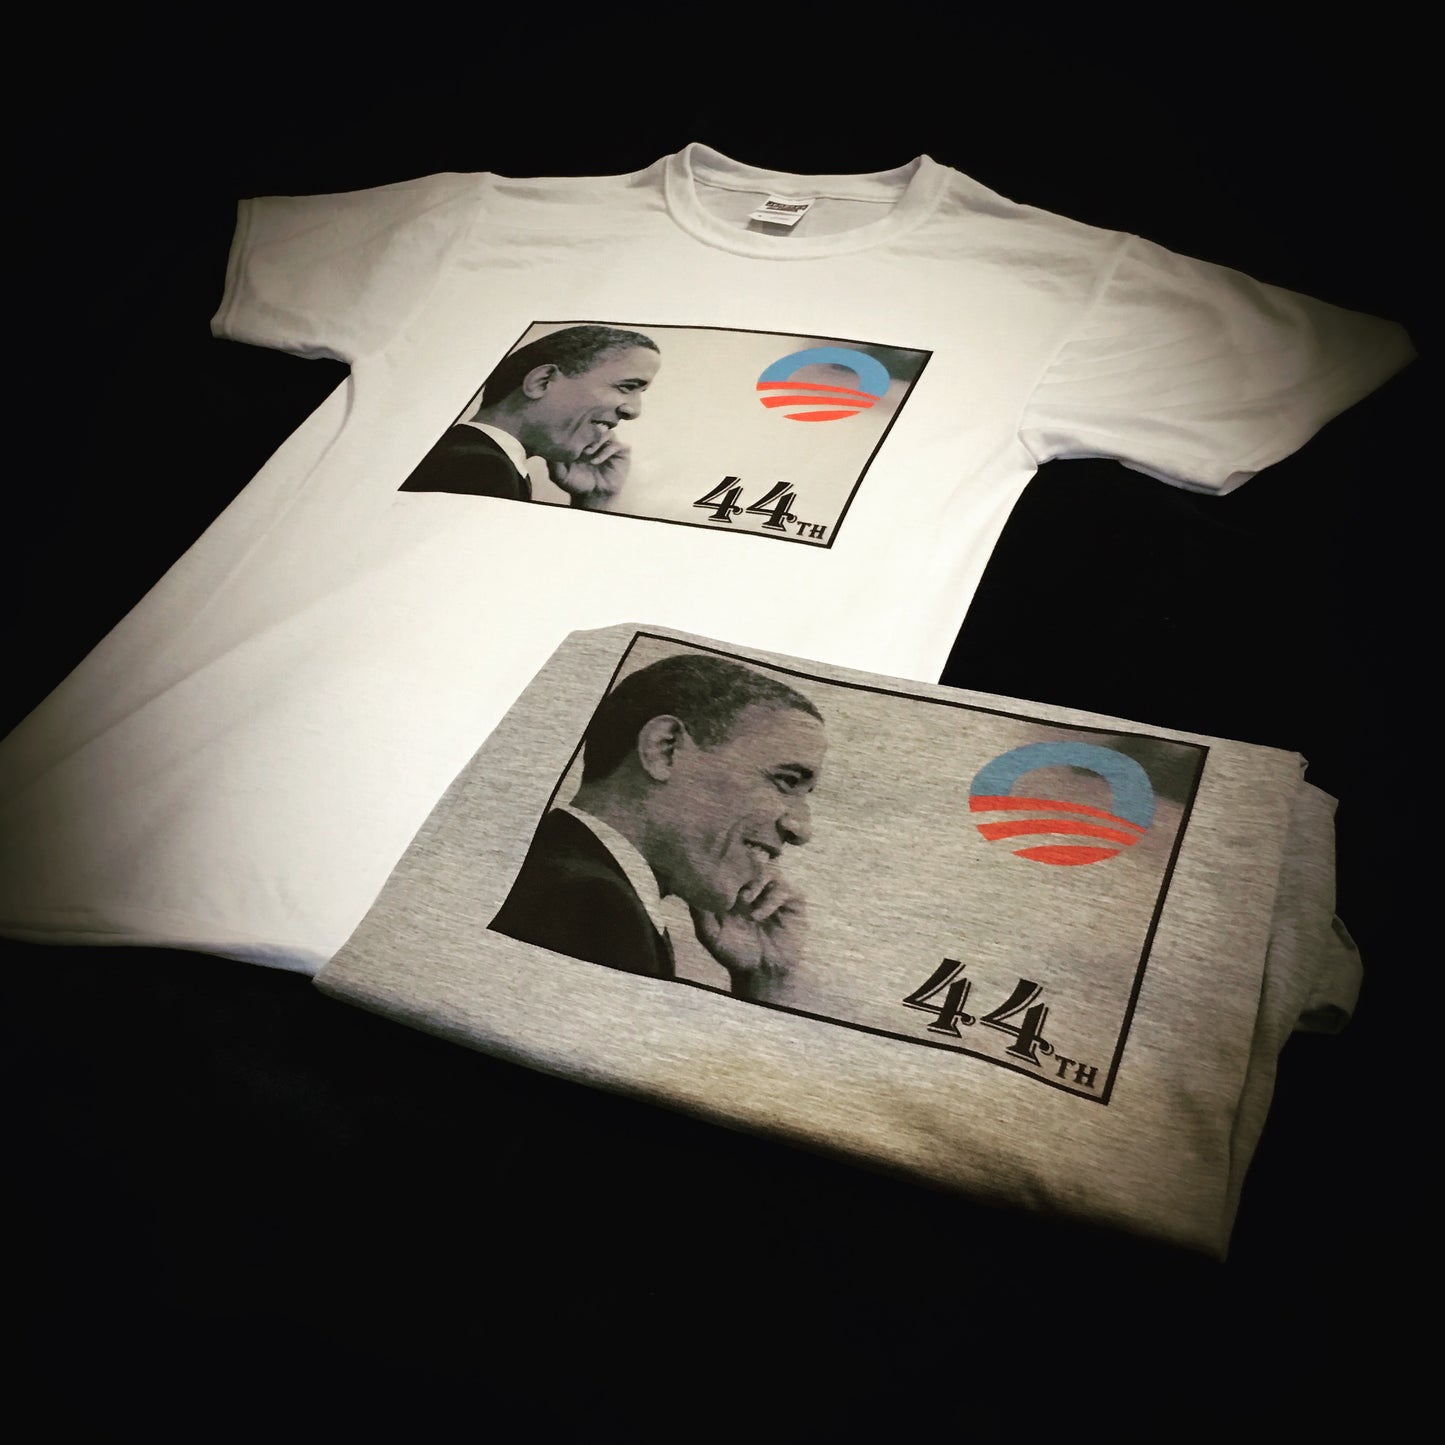 Obama 44 Shirt